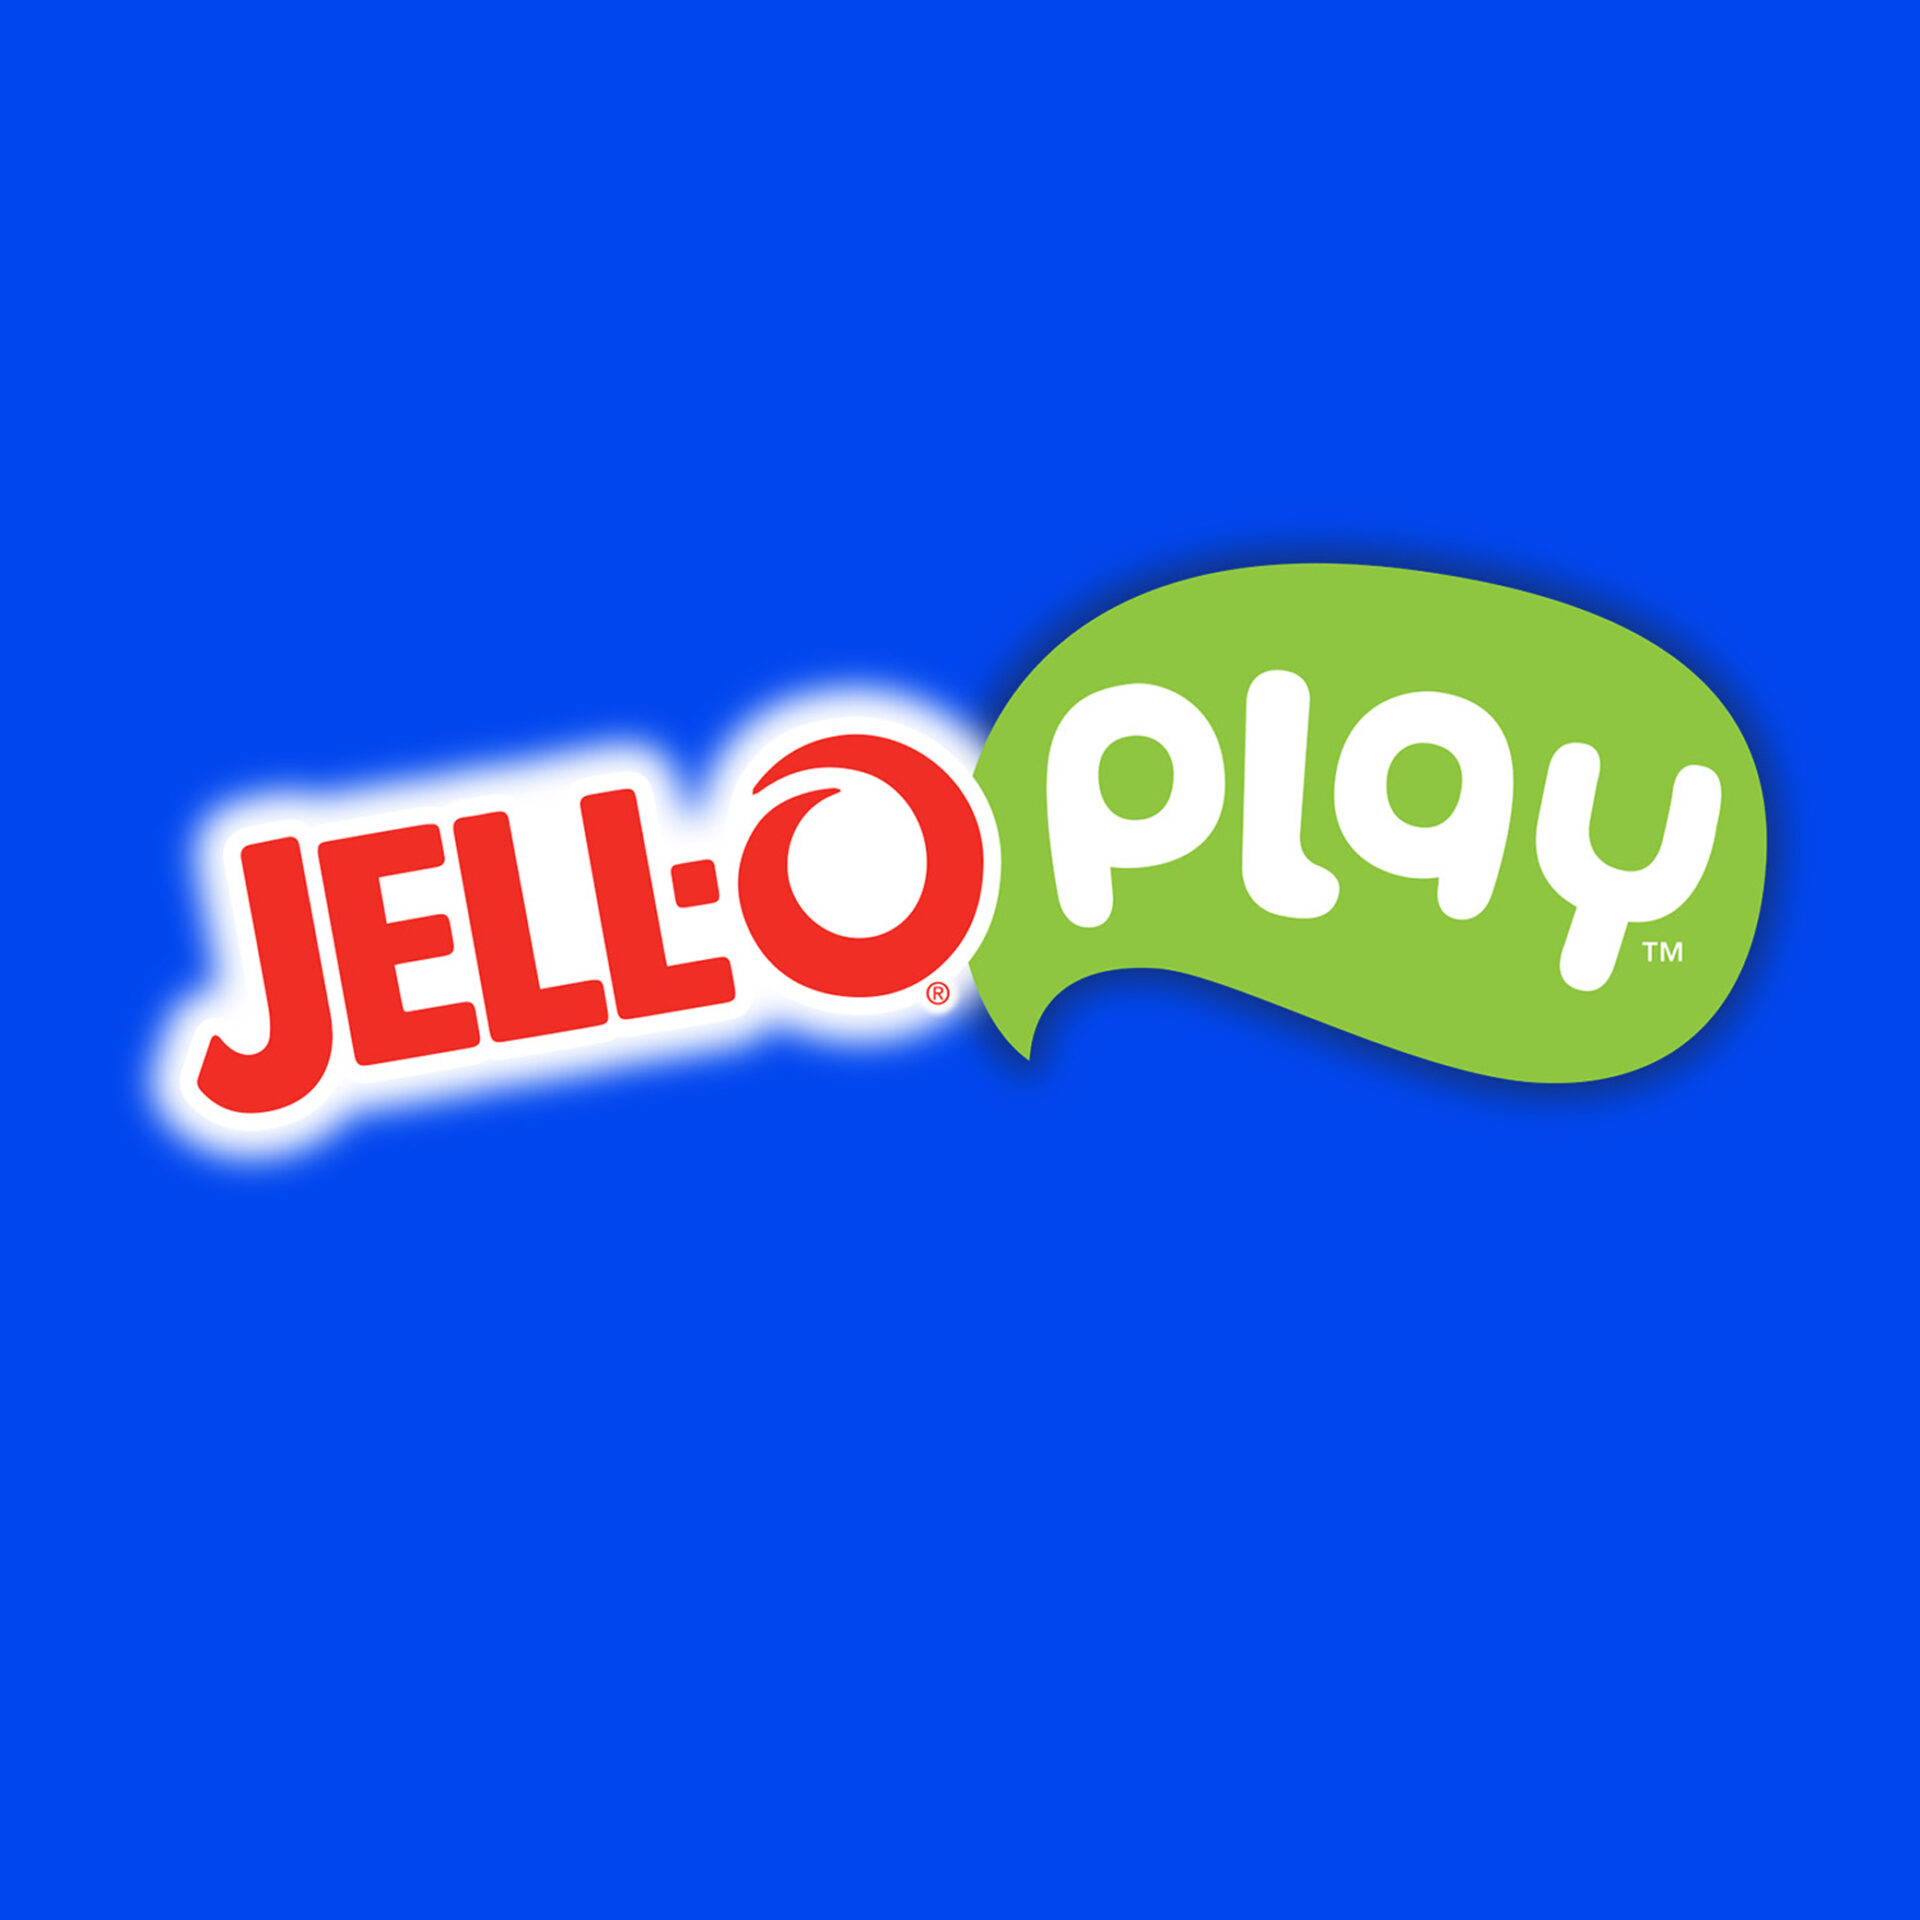 Kraft Heinz – Jell-O Play